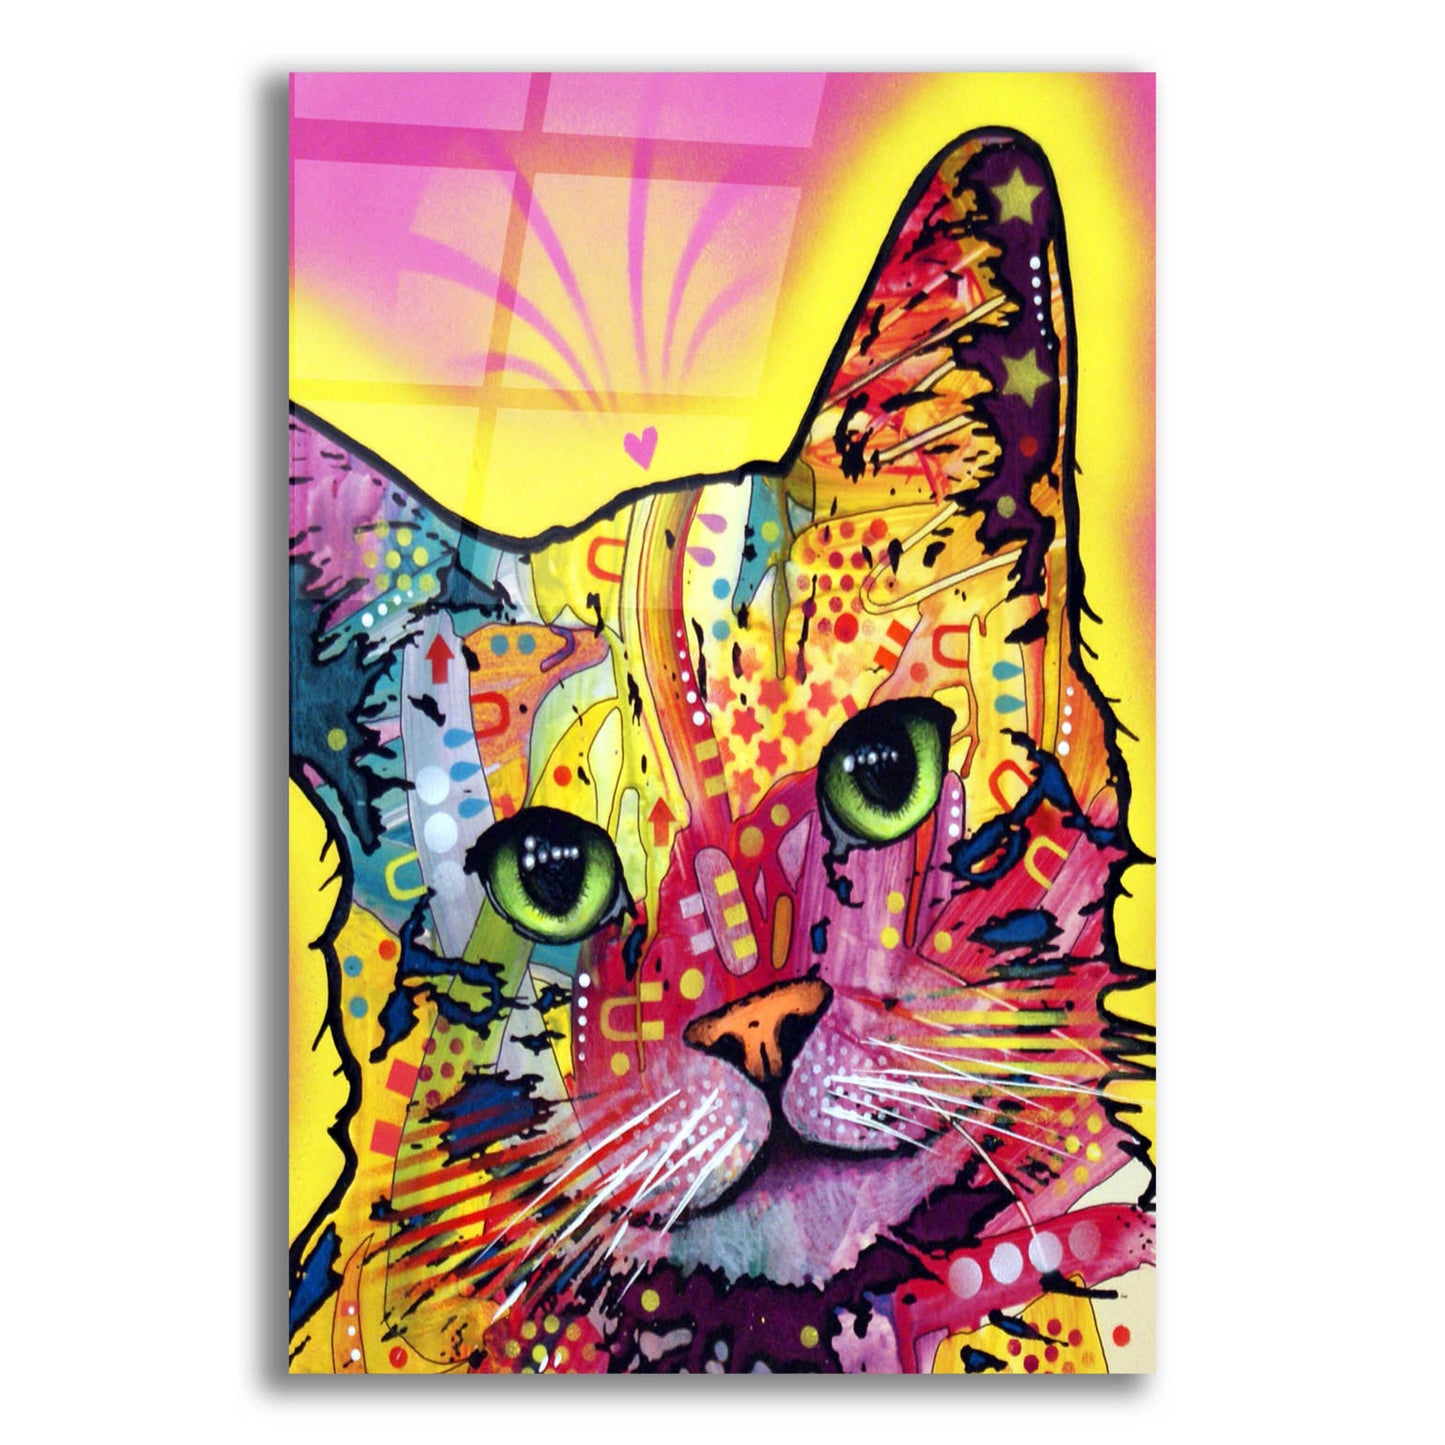 Epic Art 'Tilt Cat I' by Dean Russo, Acrylic Glass Wall Art,16x24